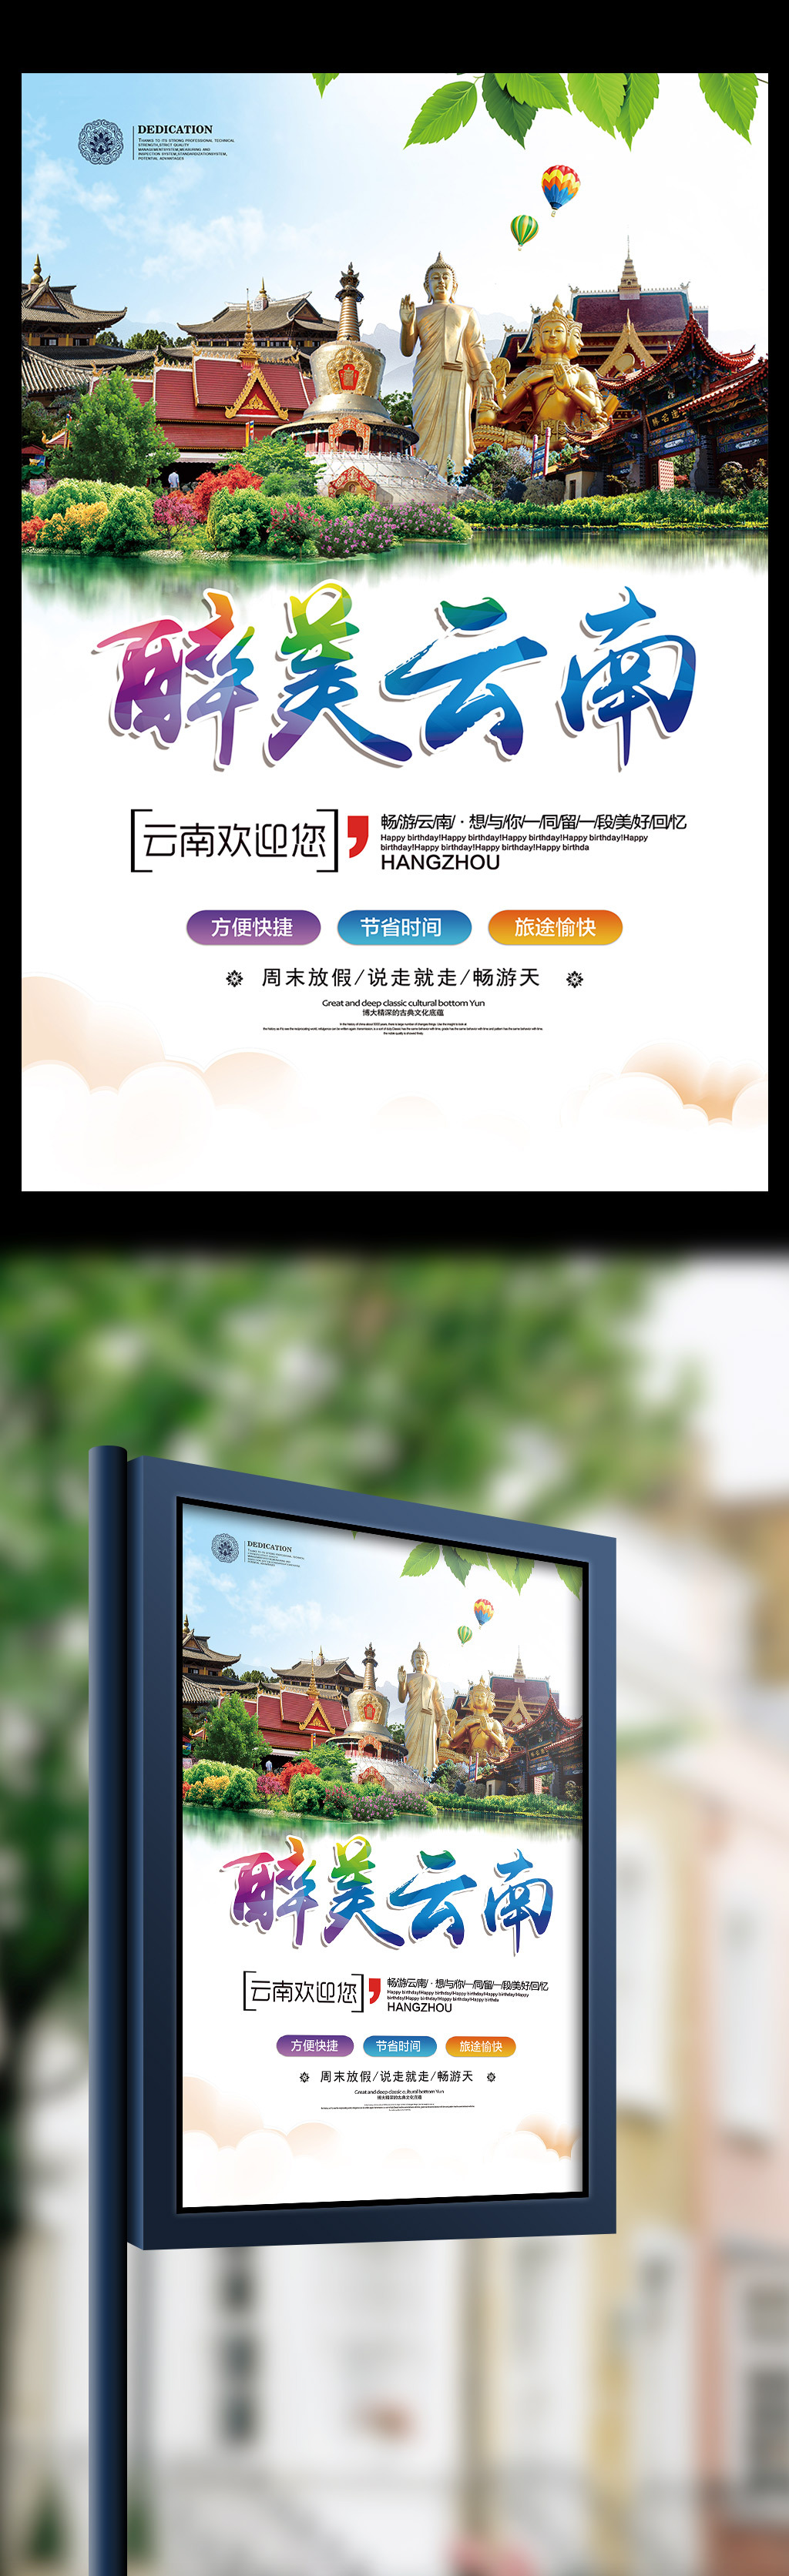 云南旅游宣传海报展板模板图片